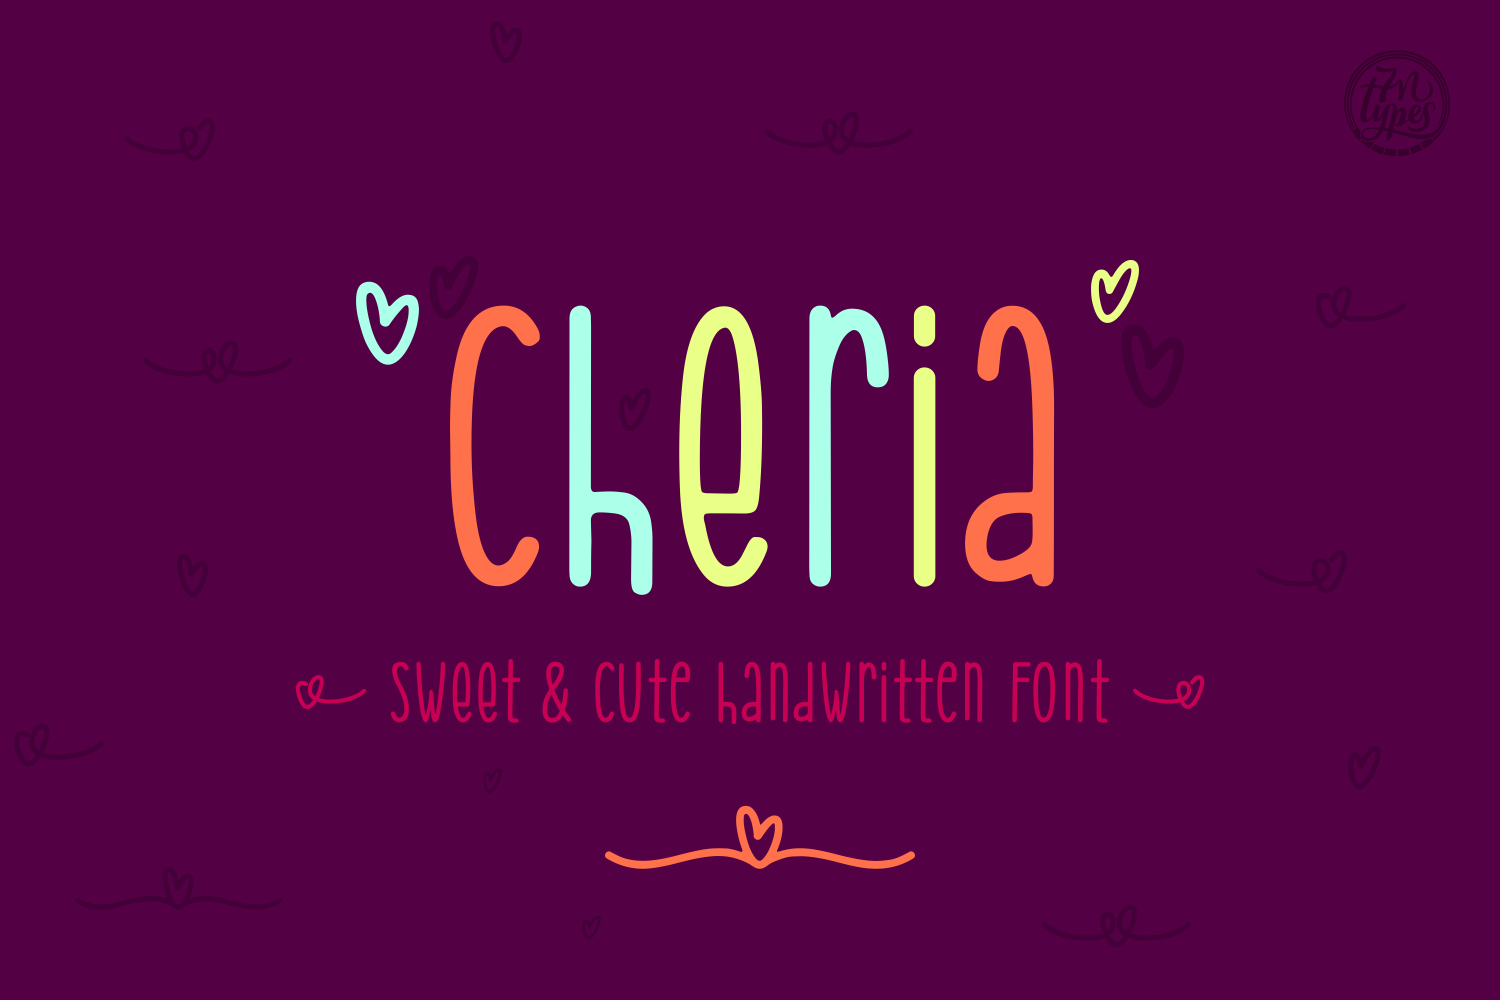 Cheria Font